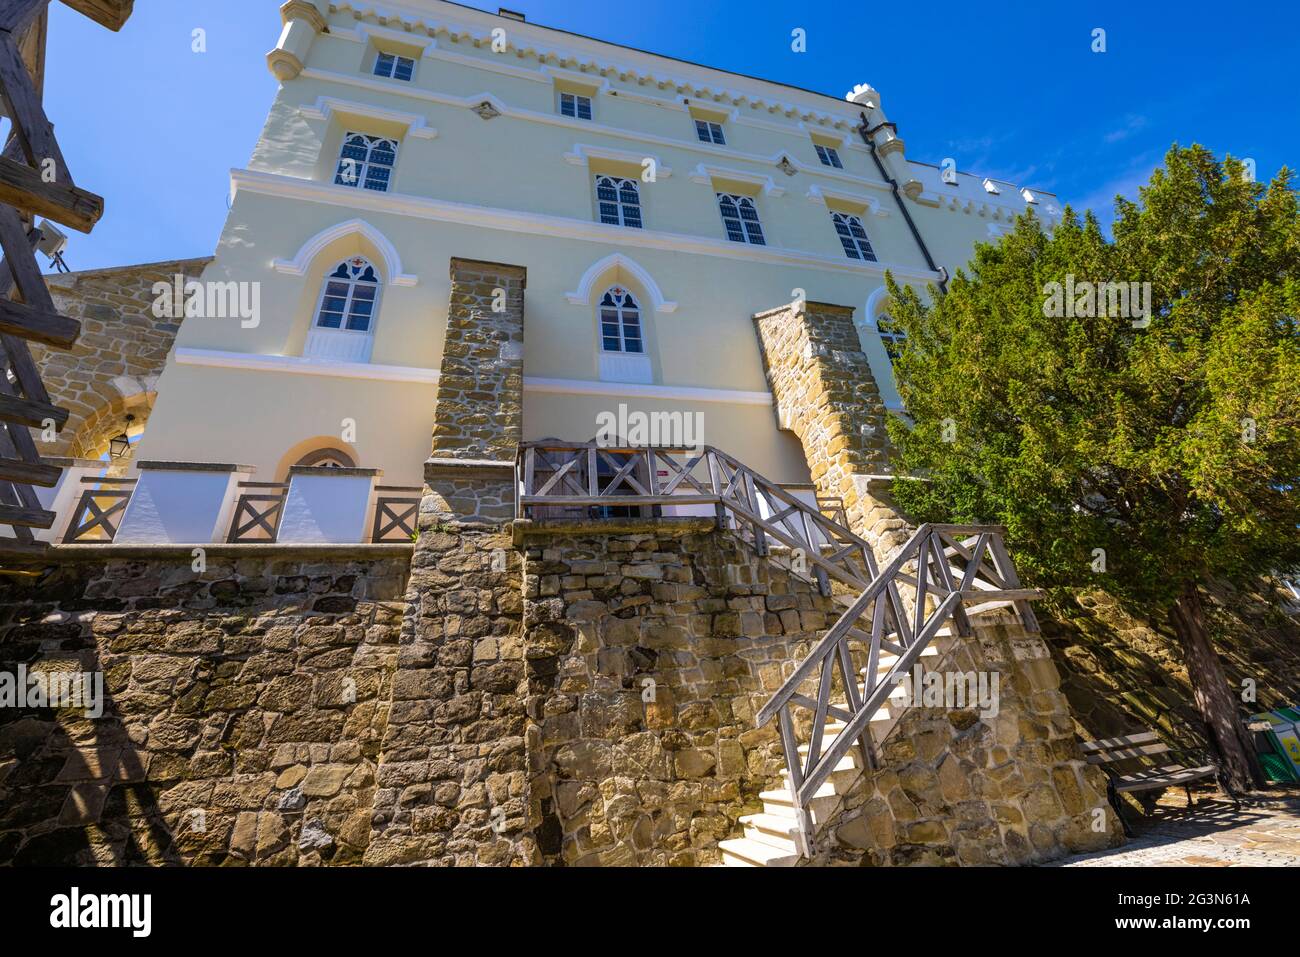 Trakoscan castle in rural Croatia Stock Photo